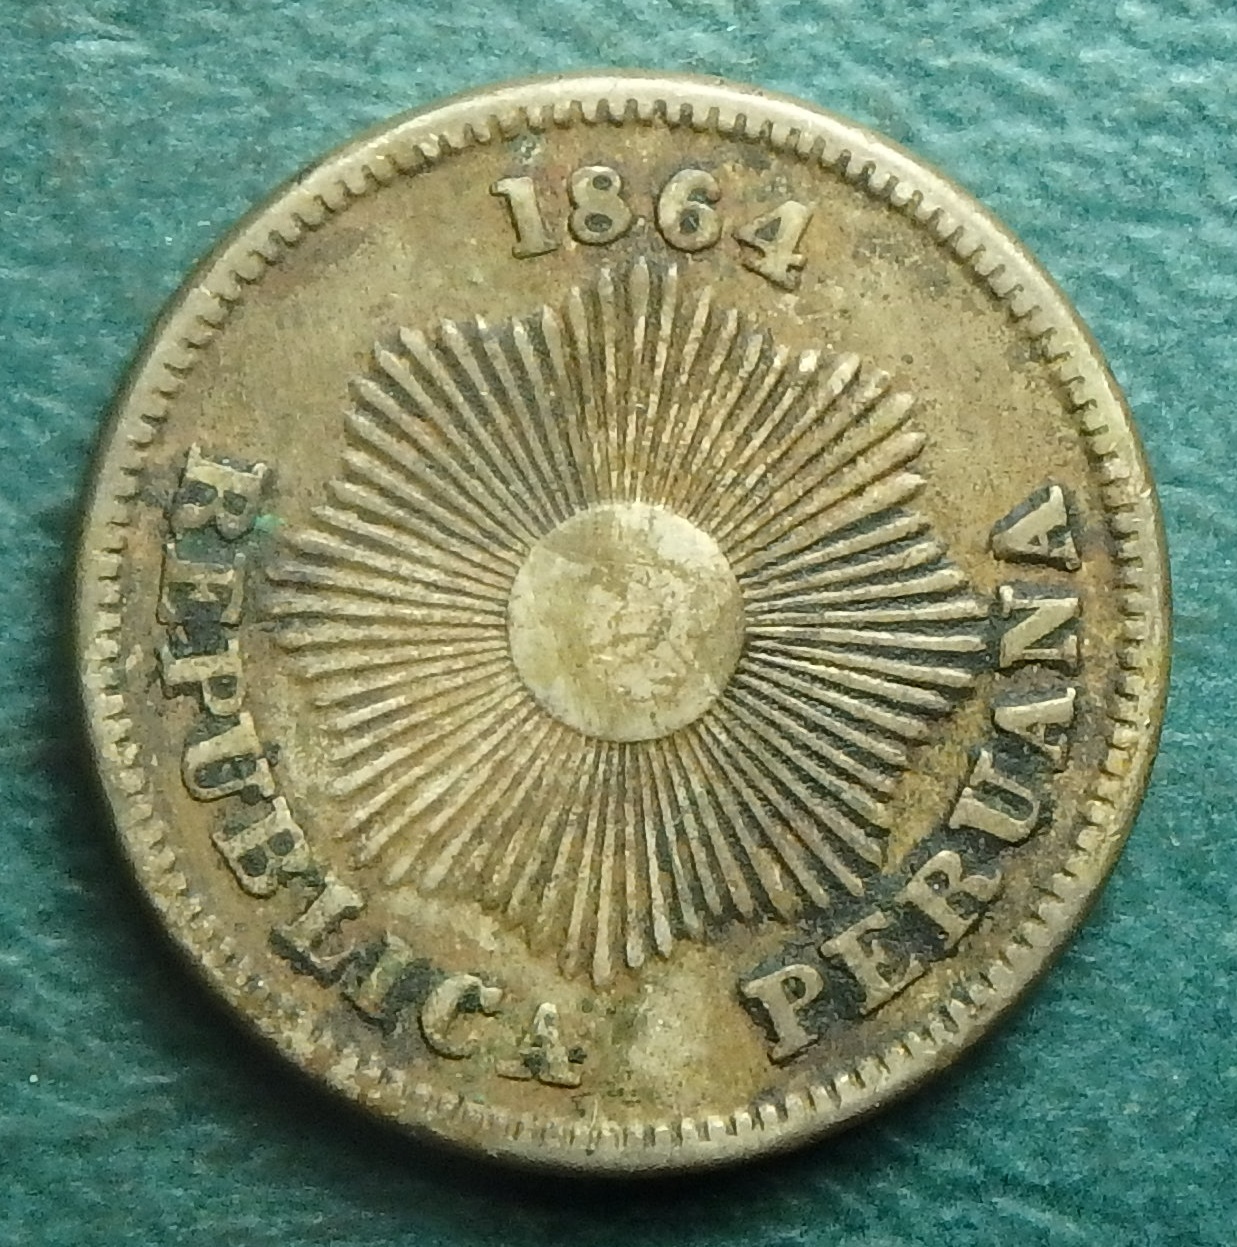 1864 PE 1 c obv.JPG